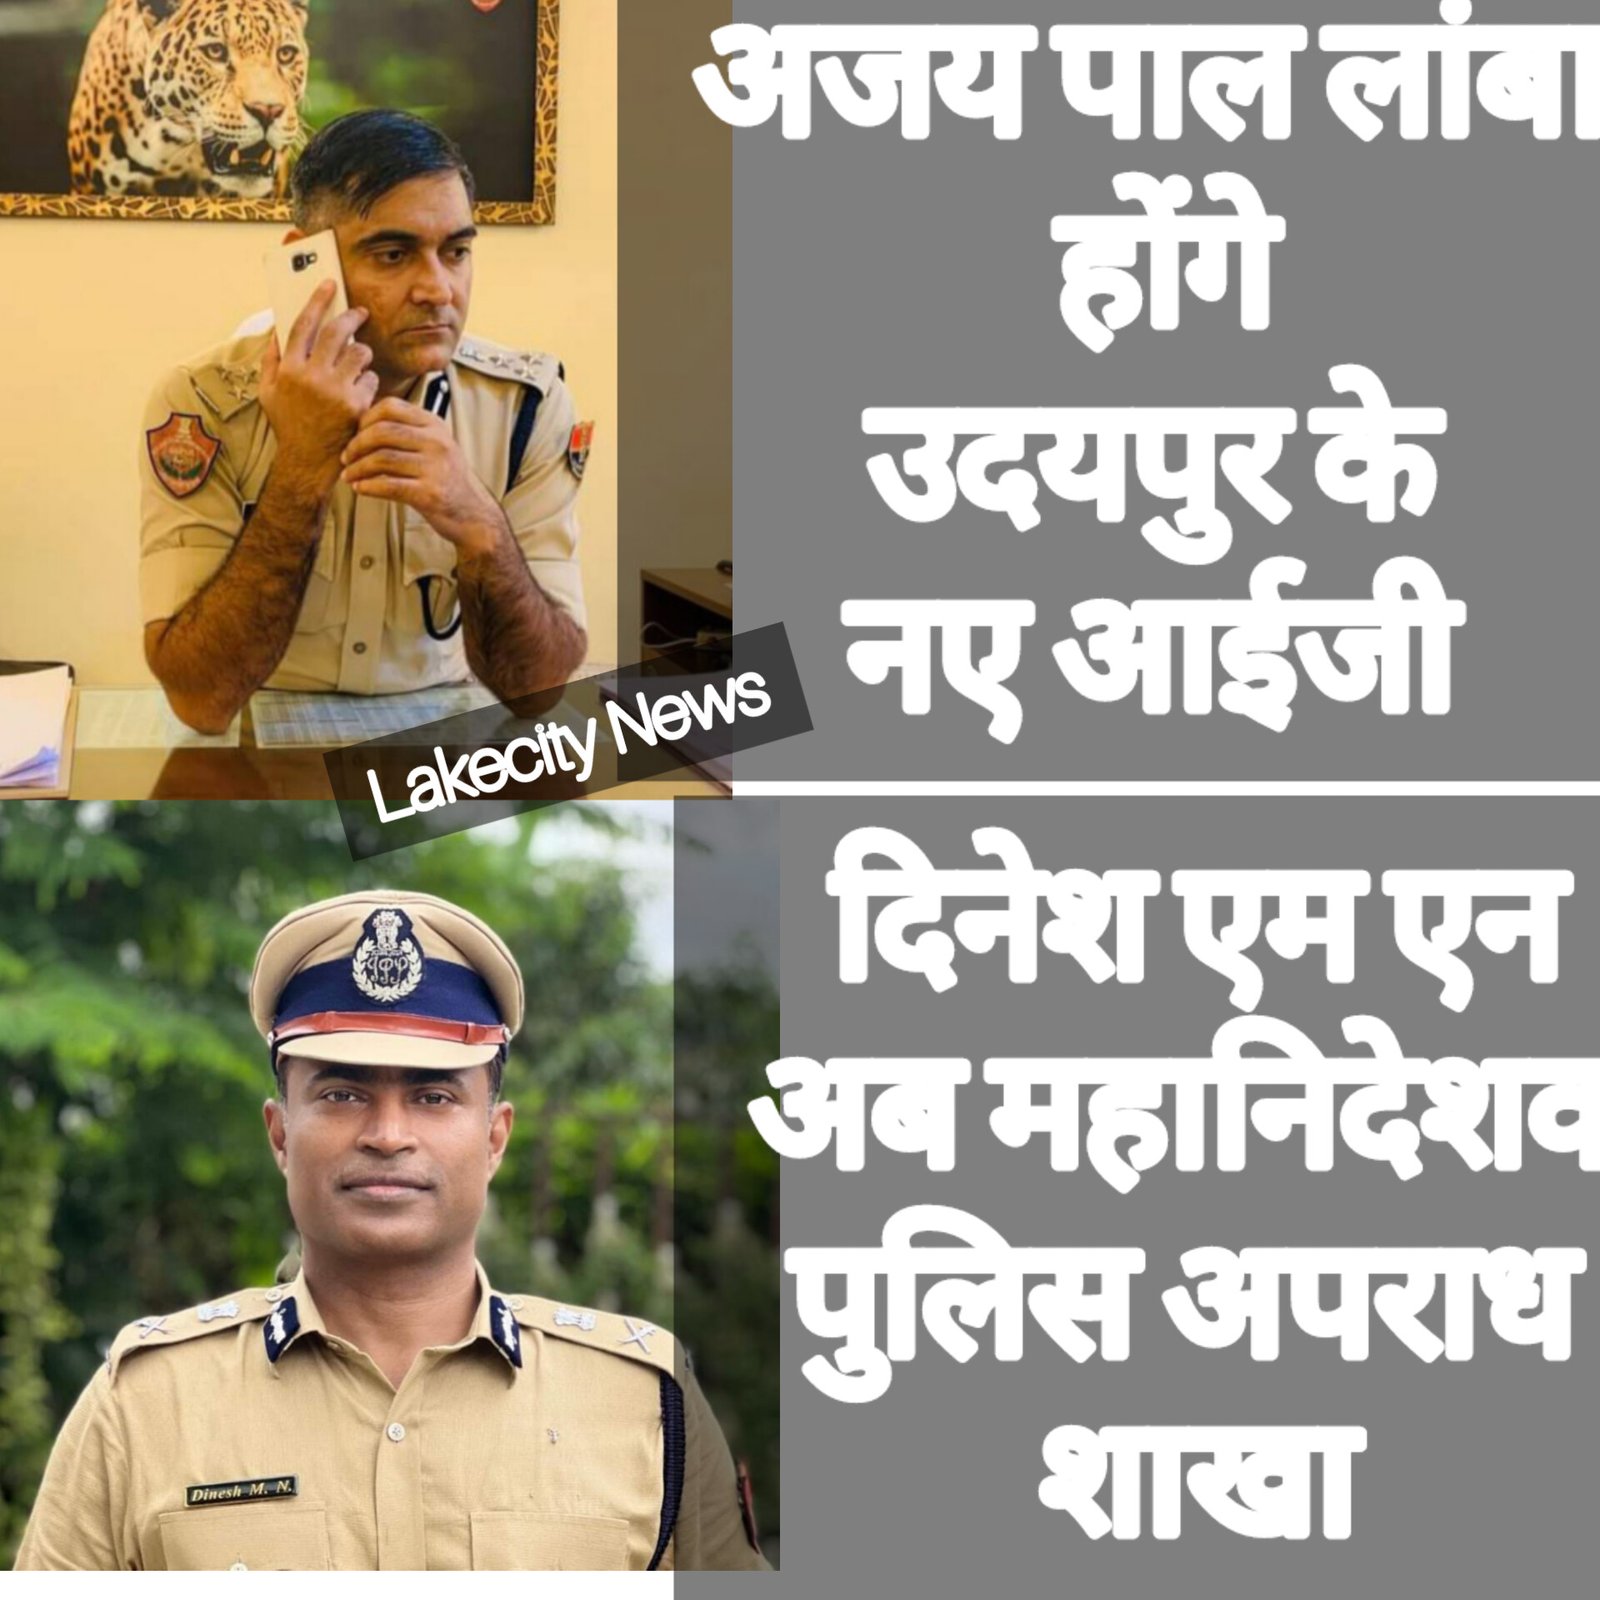 दिनेश एमएन को एसीबी से हटाकर लगाया महानिदेशक पुलिस अपराध शाखा में, उदयपुर के नए आईजी होंगे अजय पाल लांबा